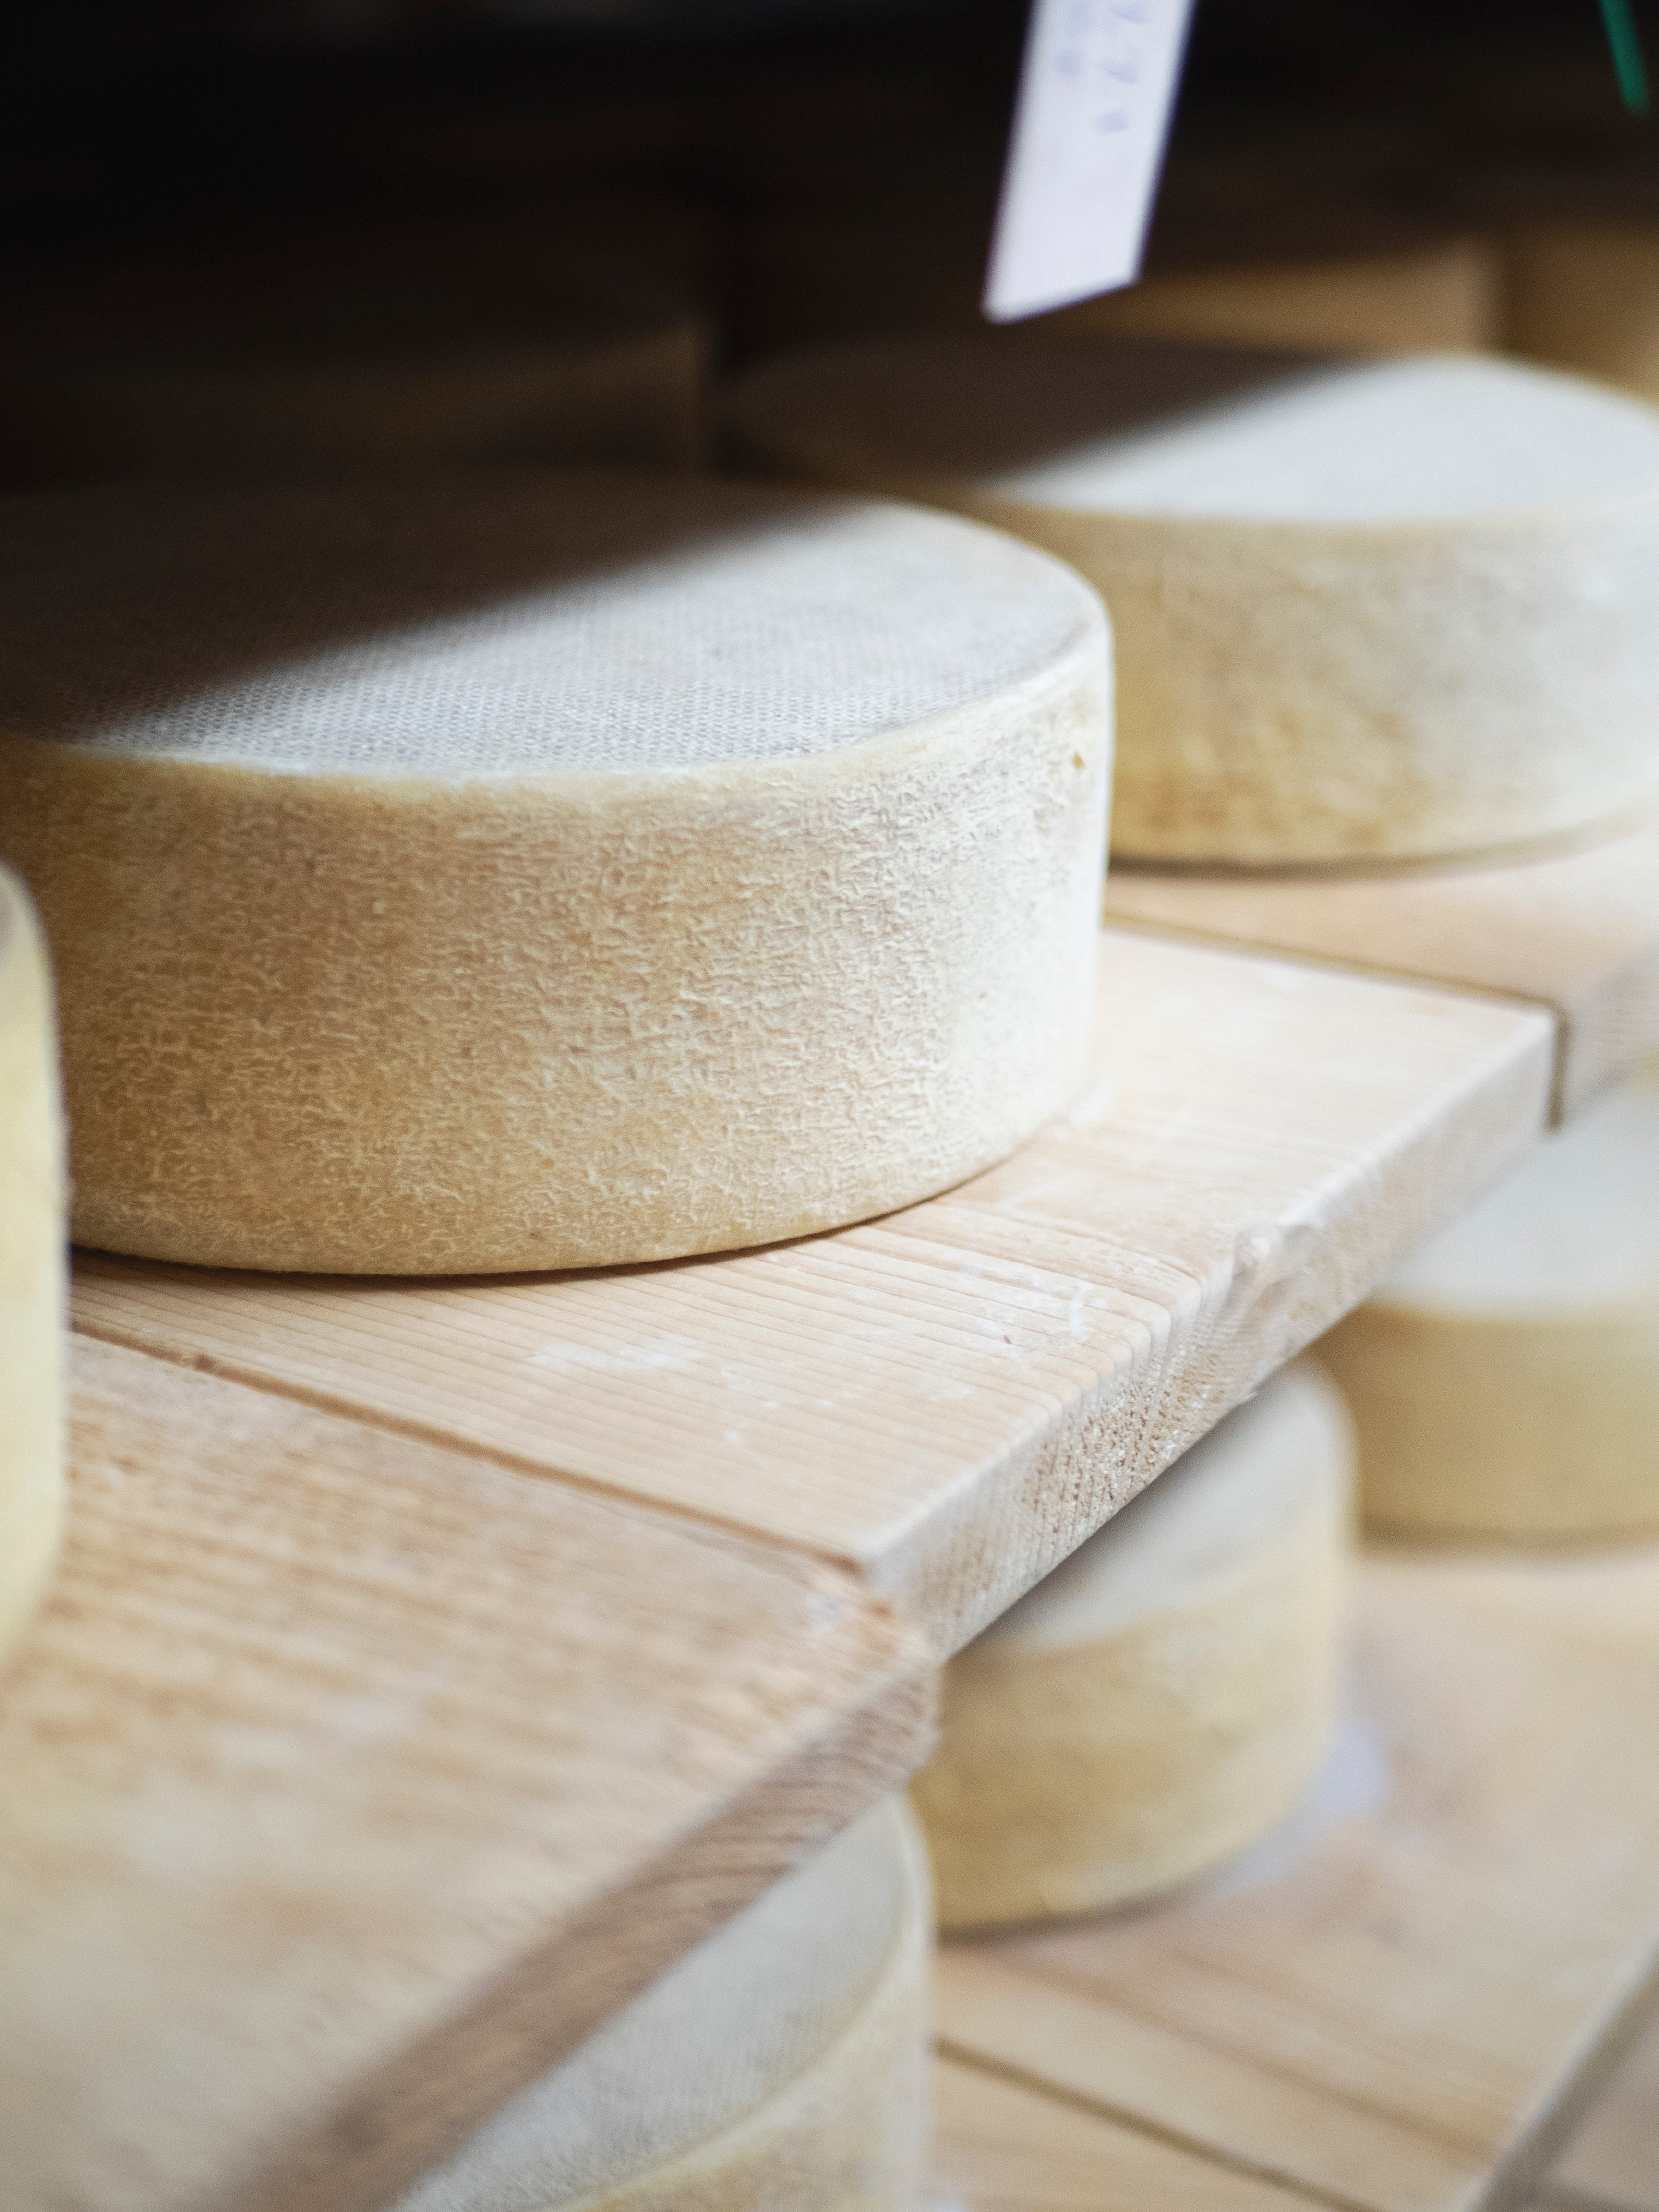 Les avantages du fromage au lait cru - Fromagerie des Grondines